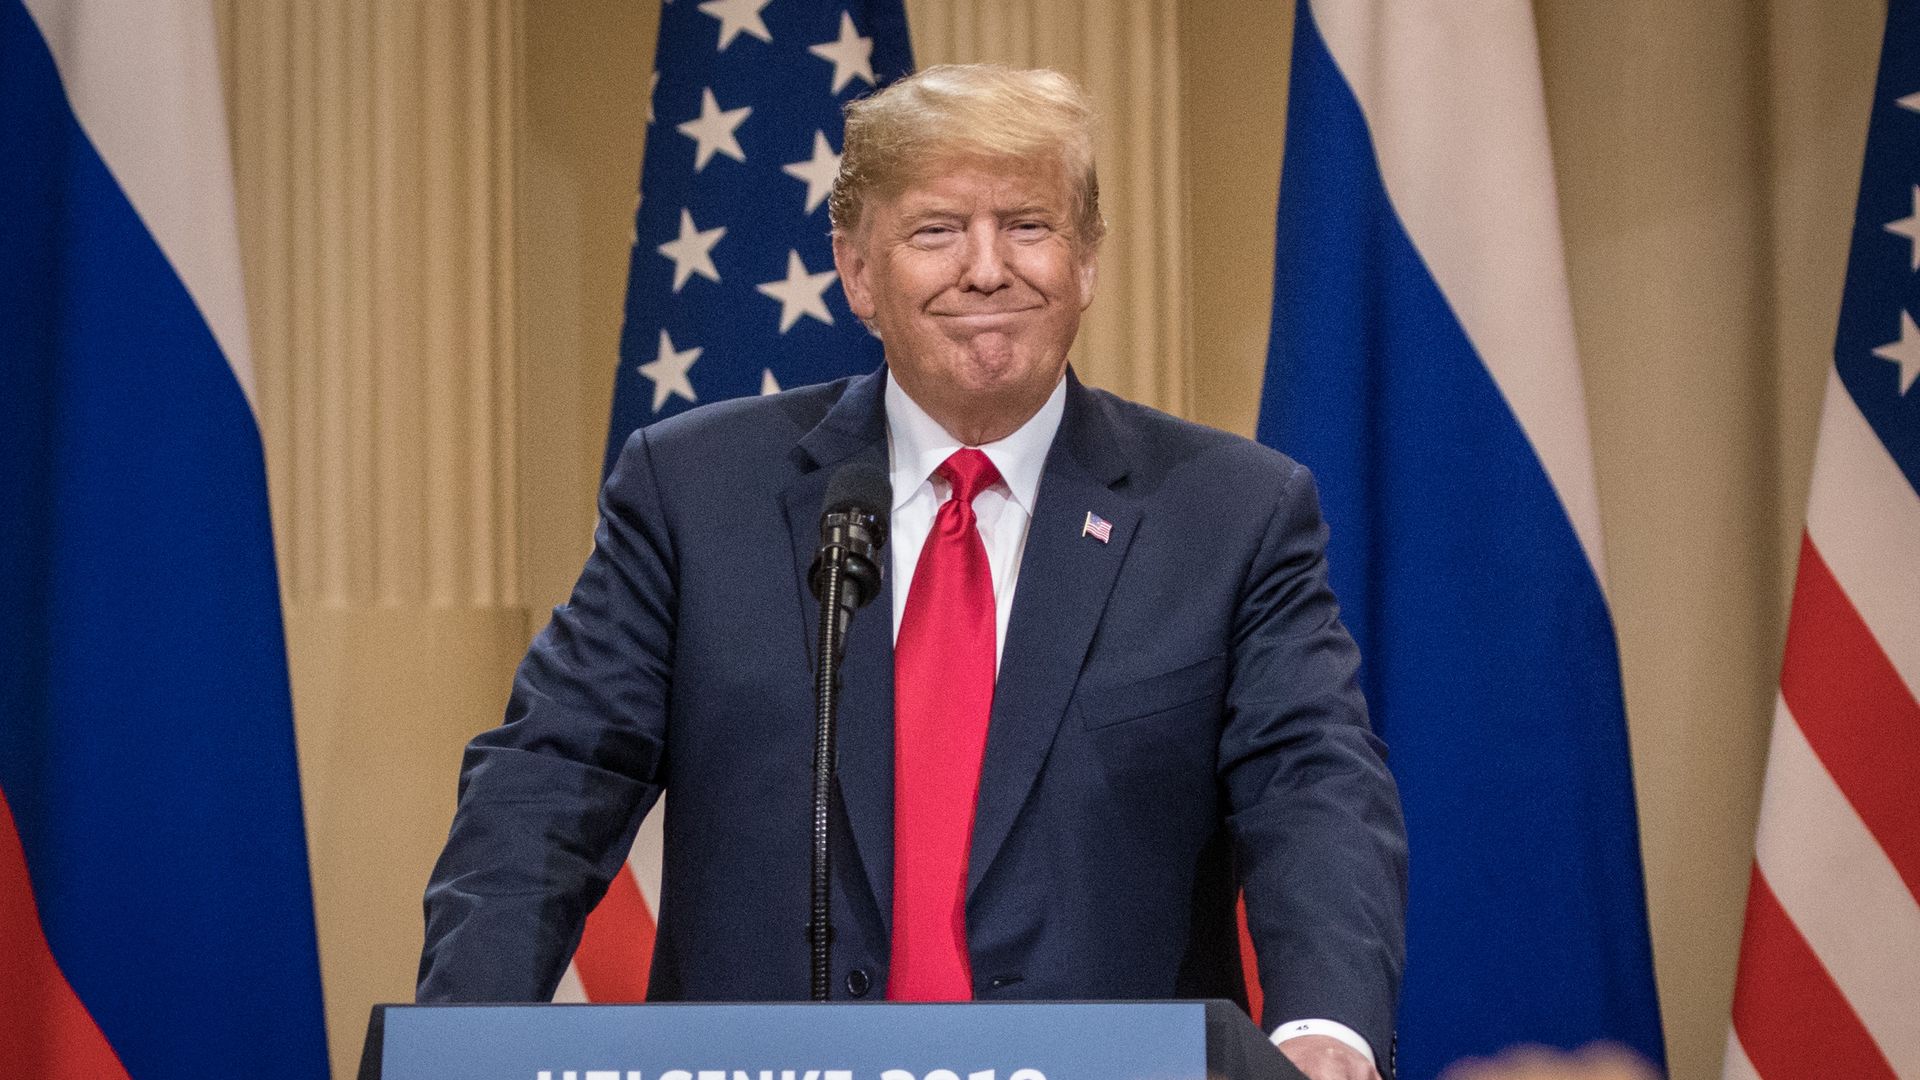 Trump at Helsinki summit